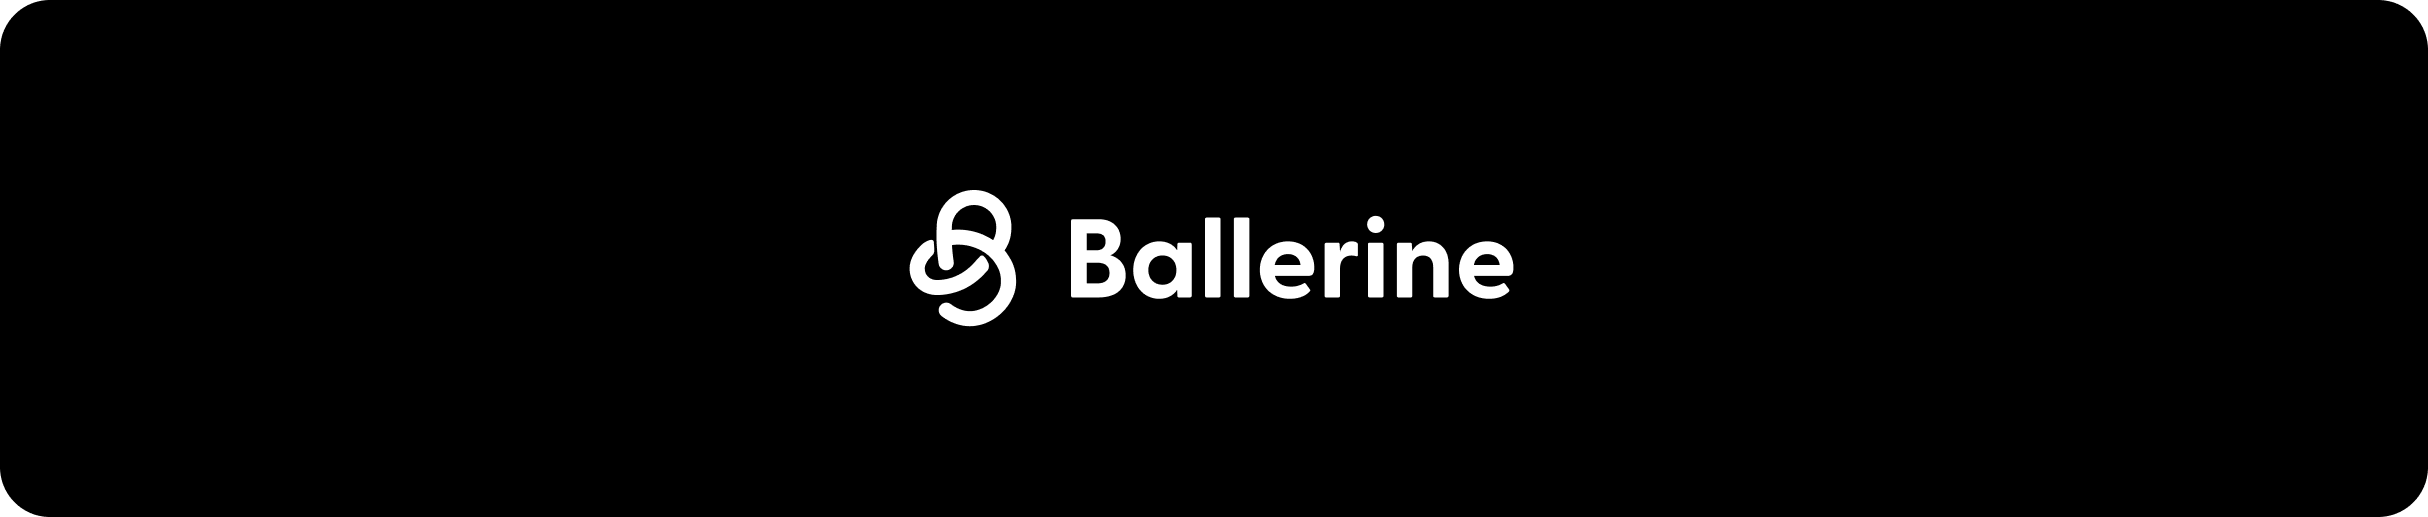 Ballerine's website